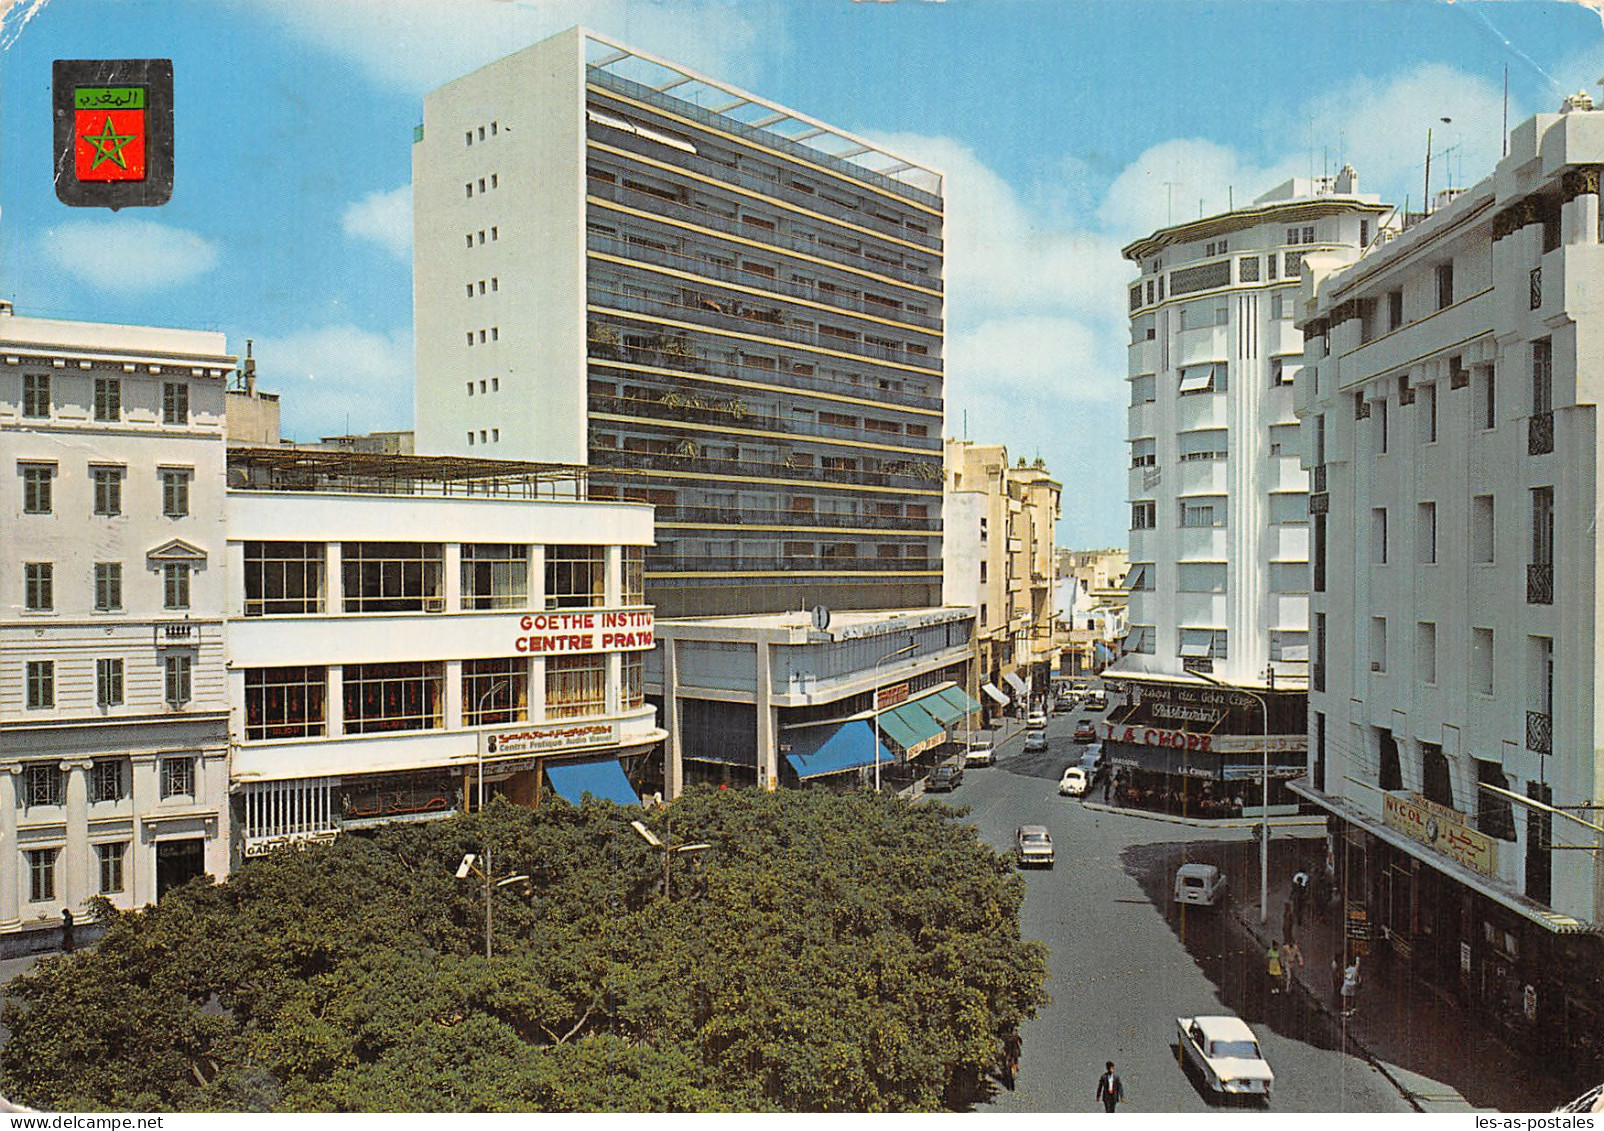 MAROC CASABLANCA - Casablanca